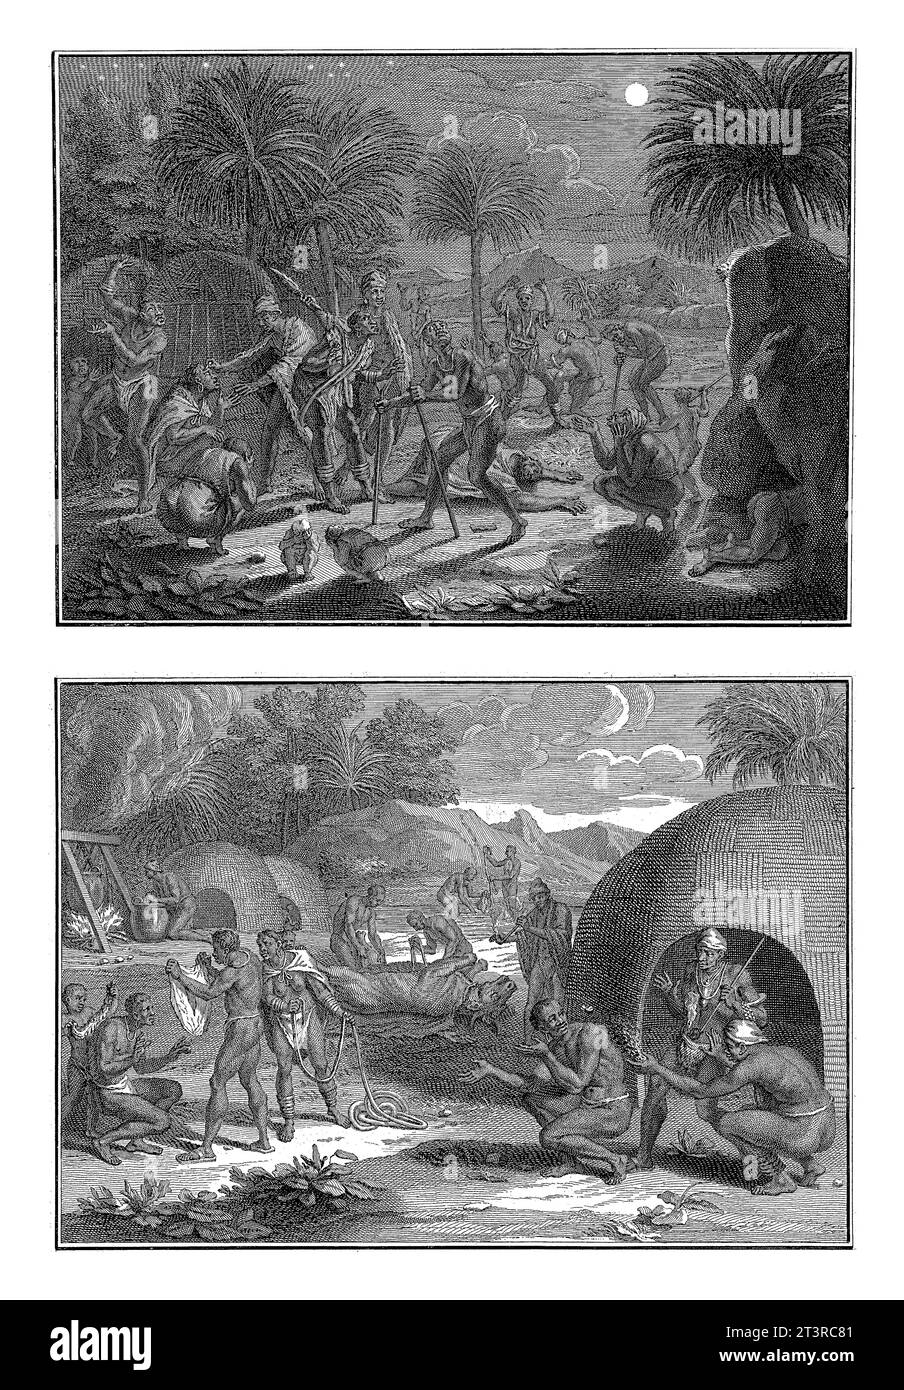 Rituali tra africani che vivono vicino al Capo di buona speranza, Bernard Picart (laboratorio di), dopo Bernard Picart, 1729 Magazine con due rappresentazioni Foto Stock